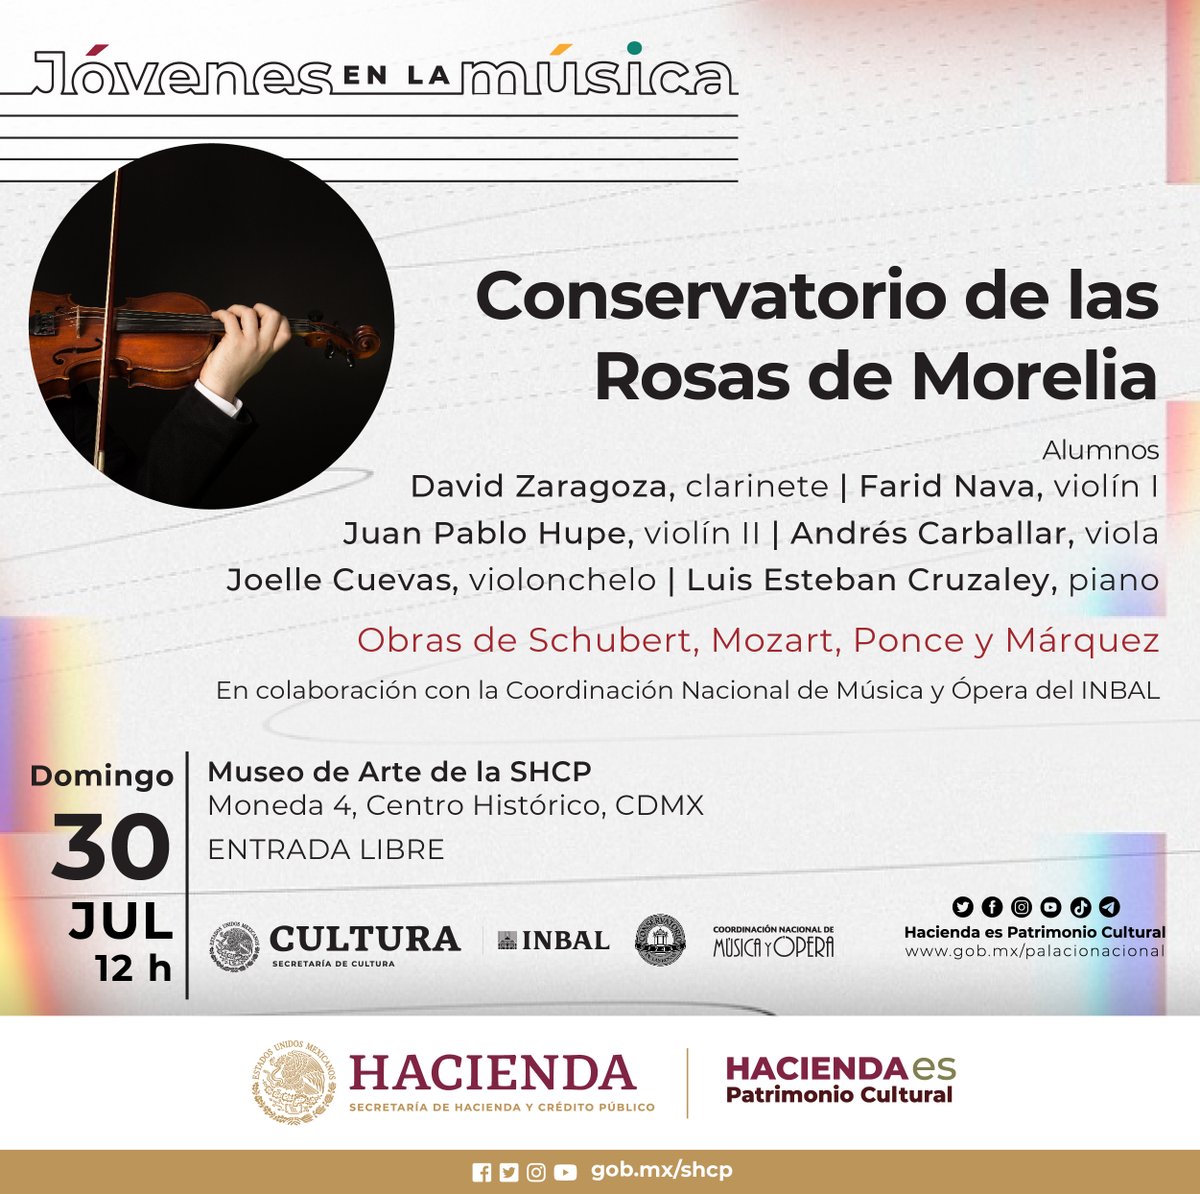 El día de mañana @HaciendaCultura, en colaboración con @MusicaINBA, te invita disfrutar del concierto de música clásica con alumnos de @elconser en nuestro Museo de Arte. 📍 Moneda 4, Centro Histórico 🗓 Domingo 30 de julio ⏰ 12:00 horas 🎟️ Entrada libre